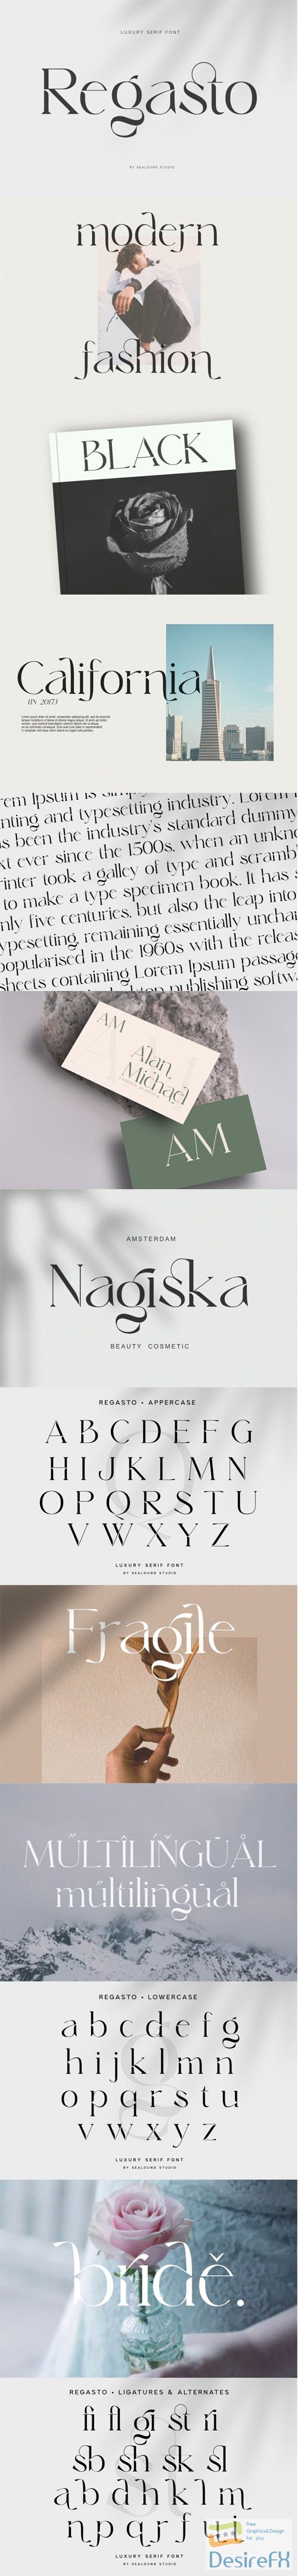 Regasto - Luxury Serif Font